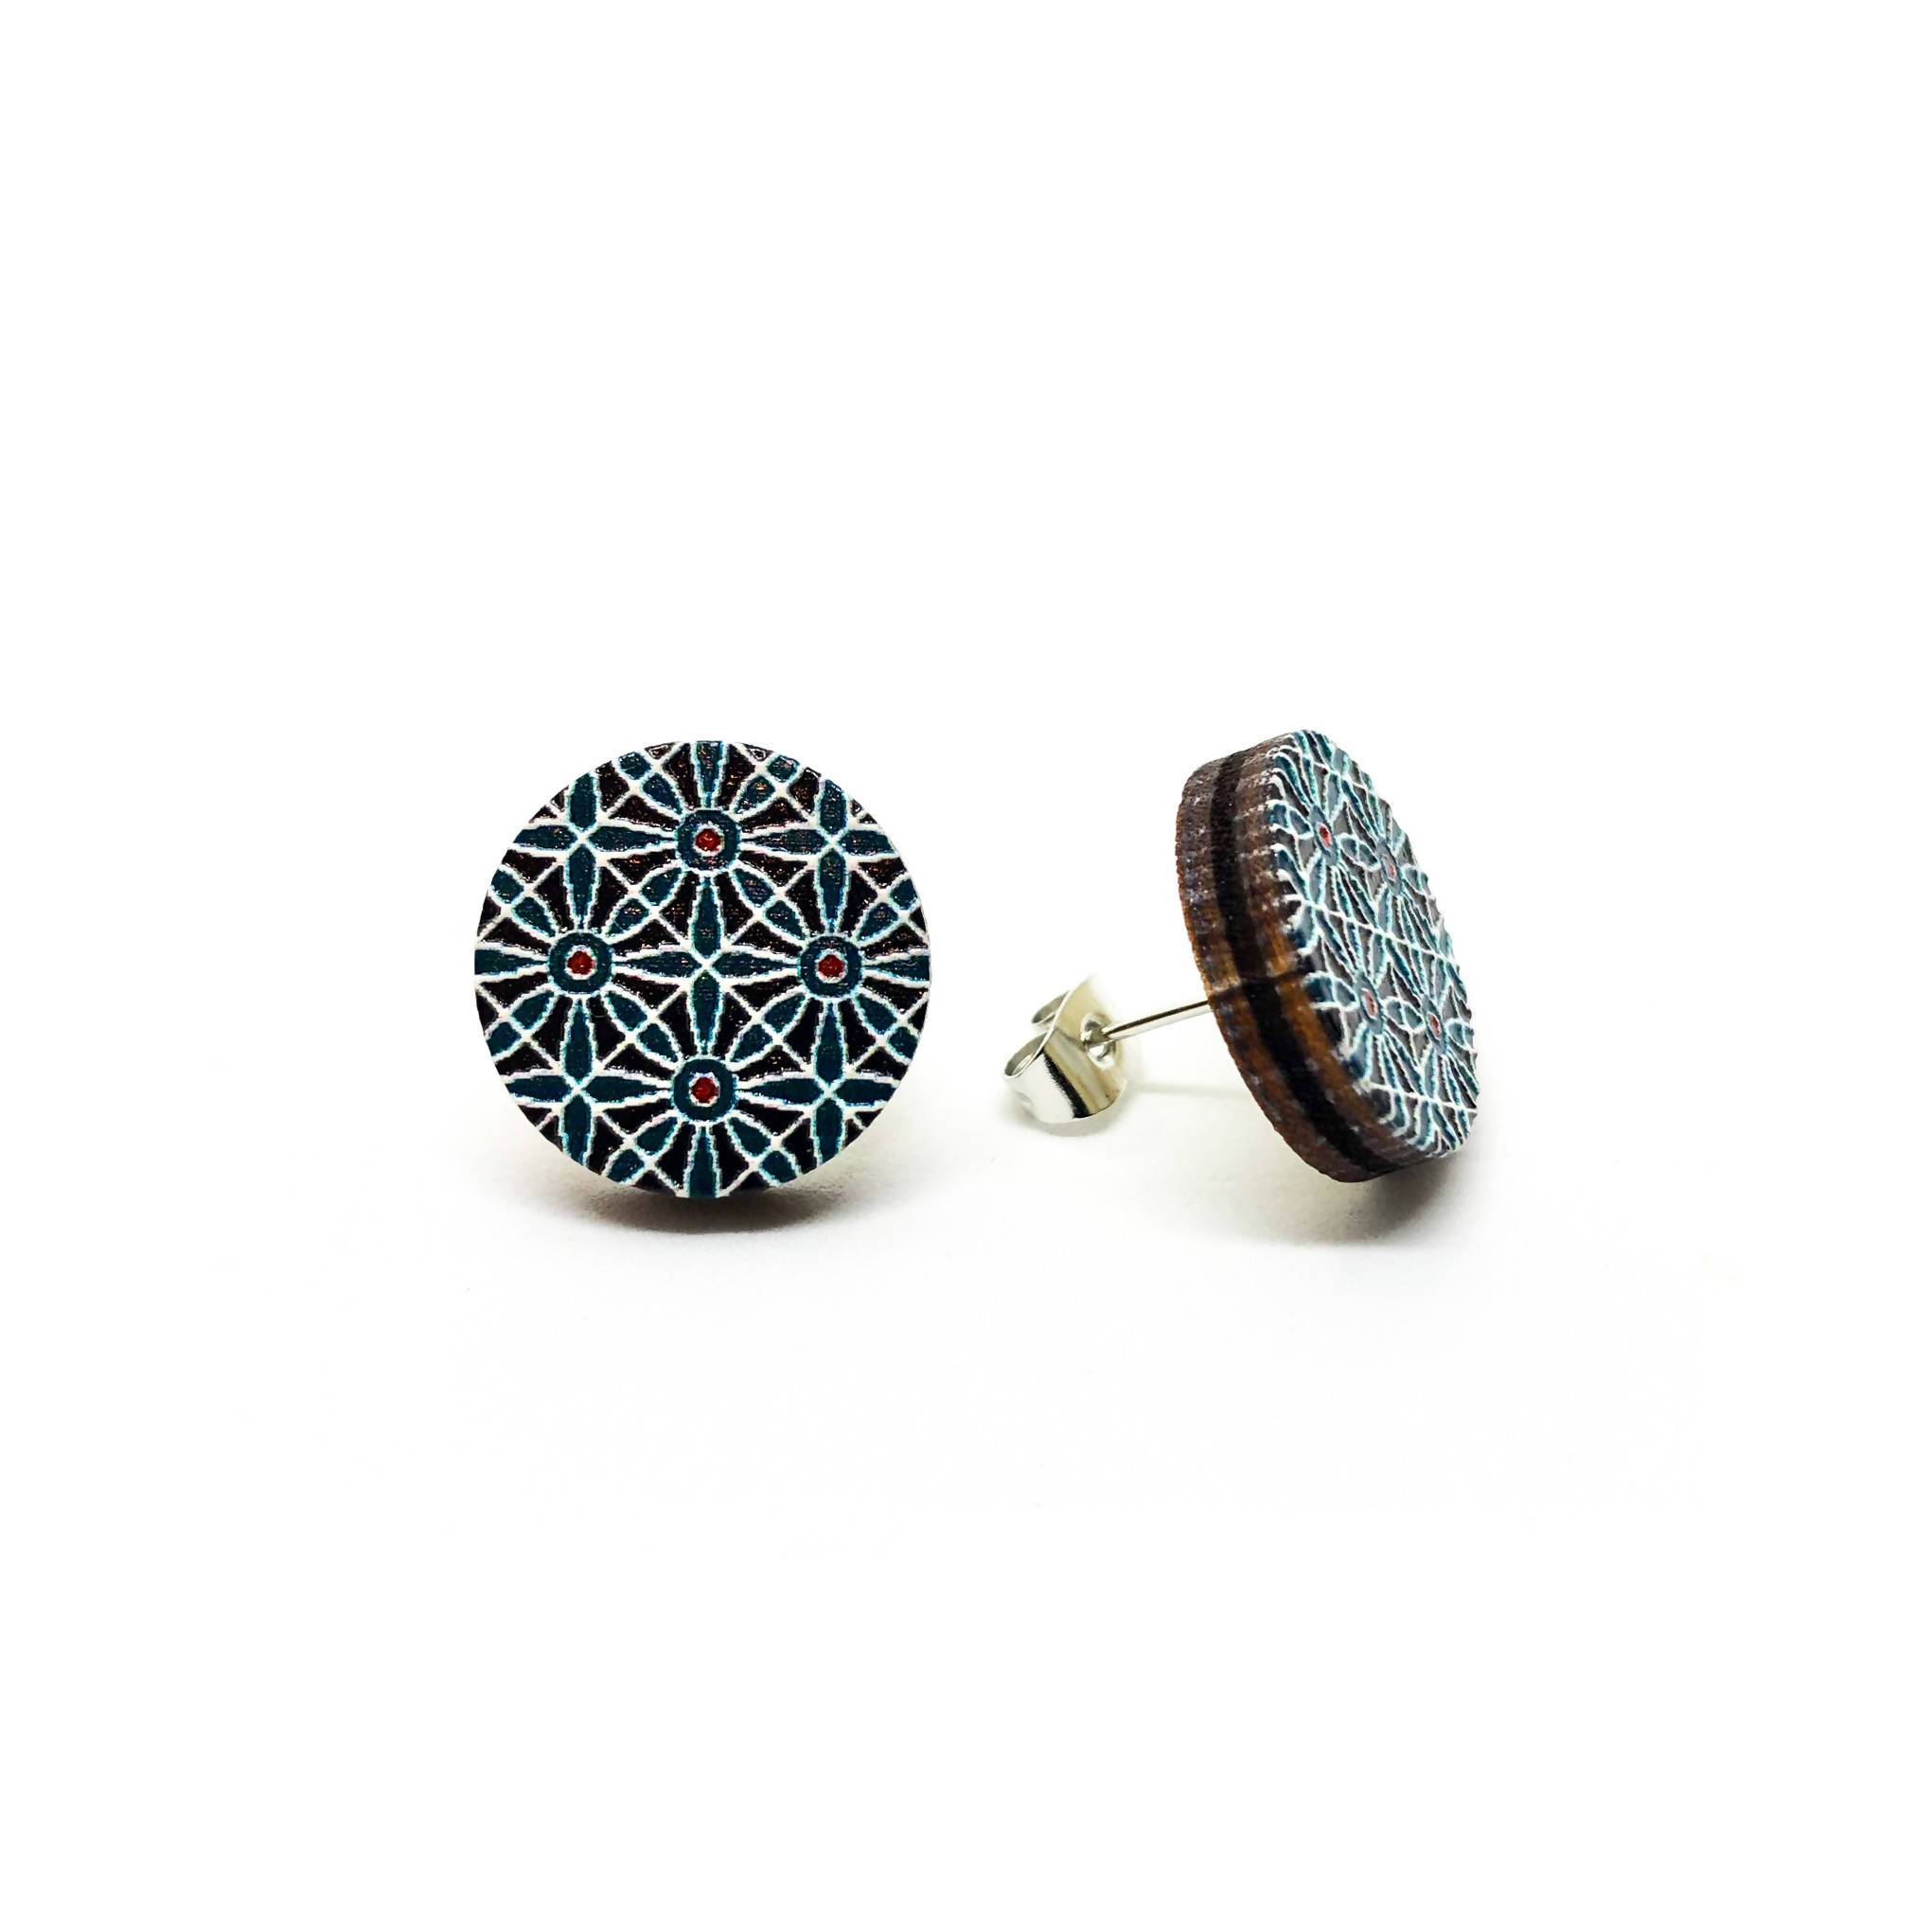 Dark Blue Petals Wooden Earrings - Earring Studs - Paperdaise Accessories - Naiise